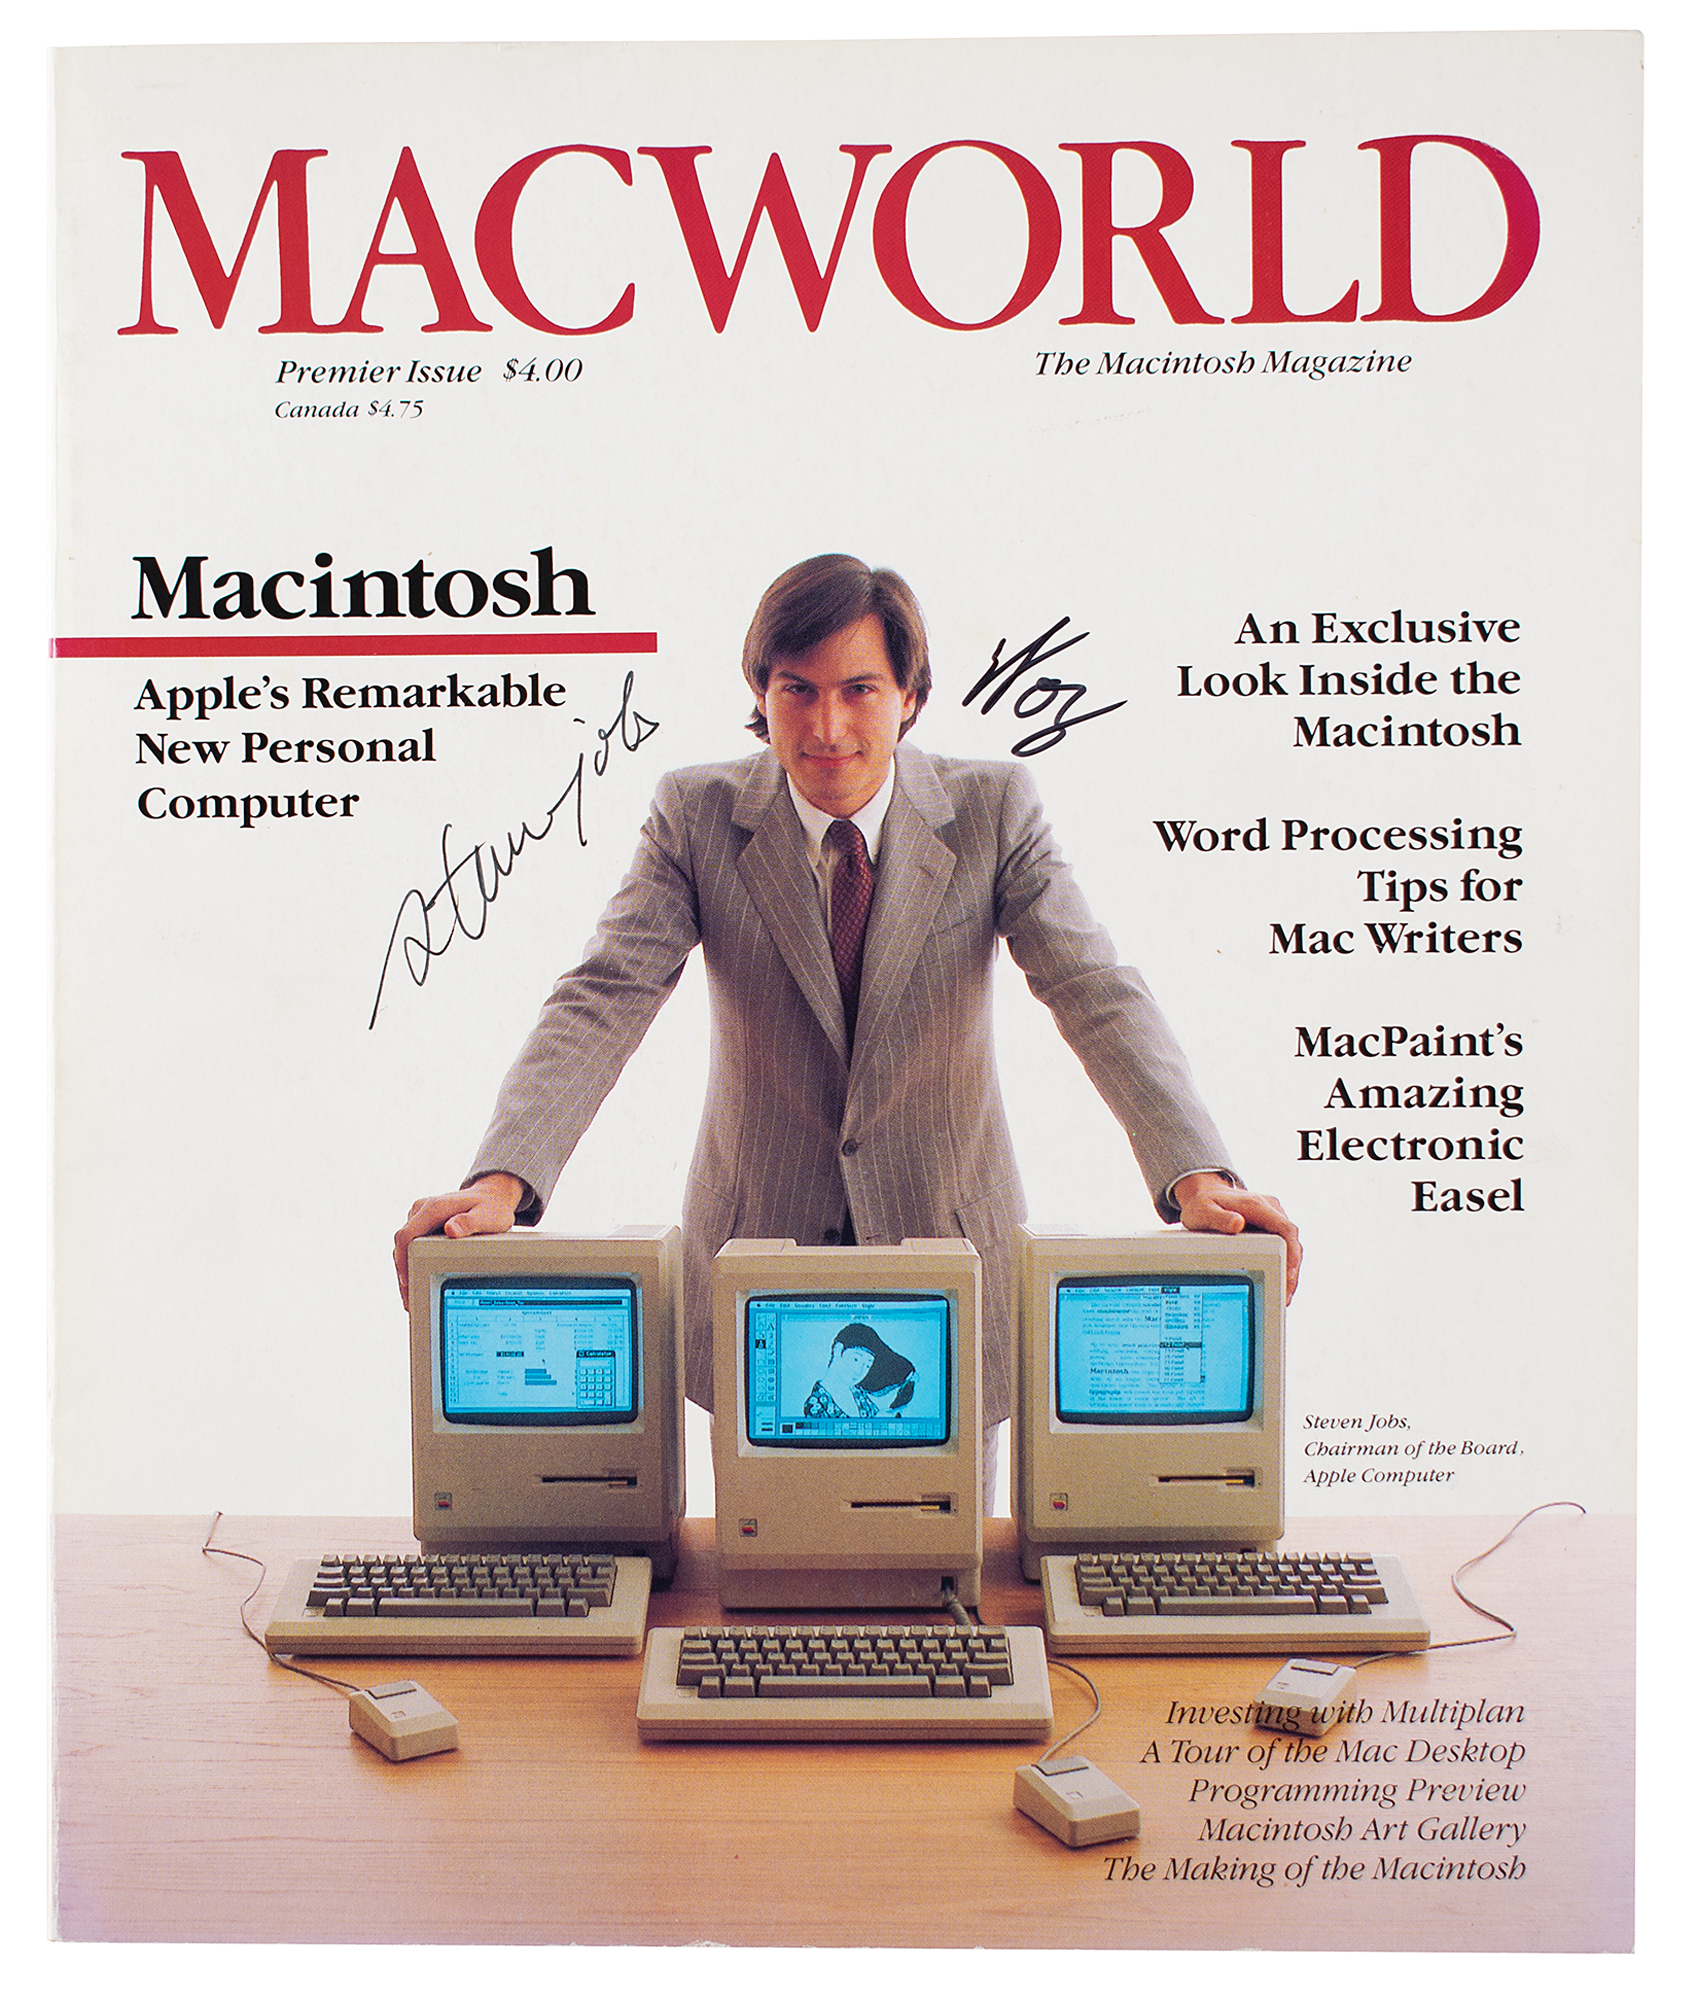 Lot #7004 Steve Jobs and Steve Wozniak Signed Issue of Macworld #1